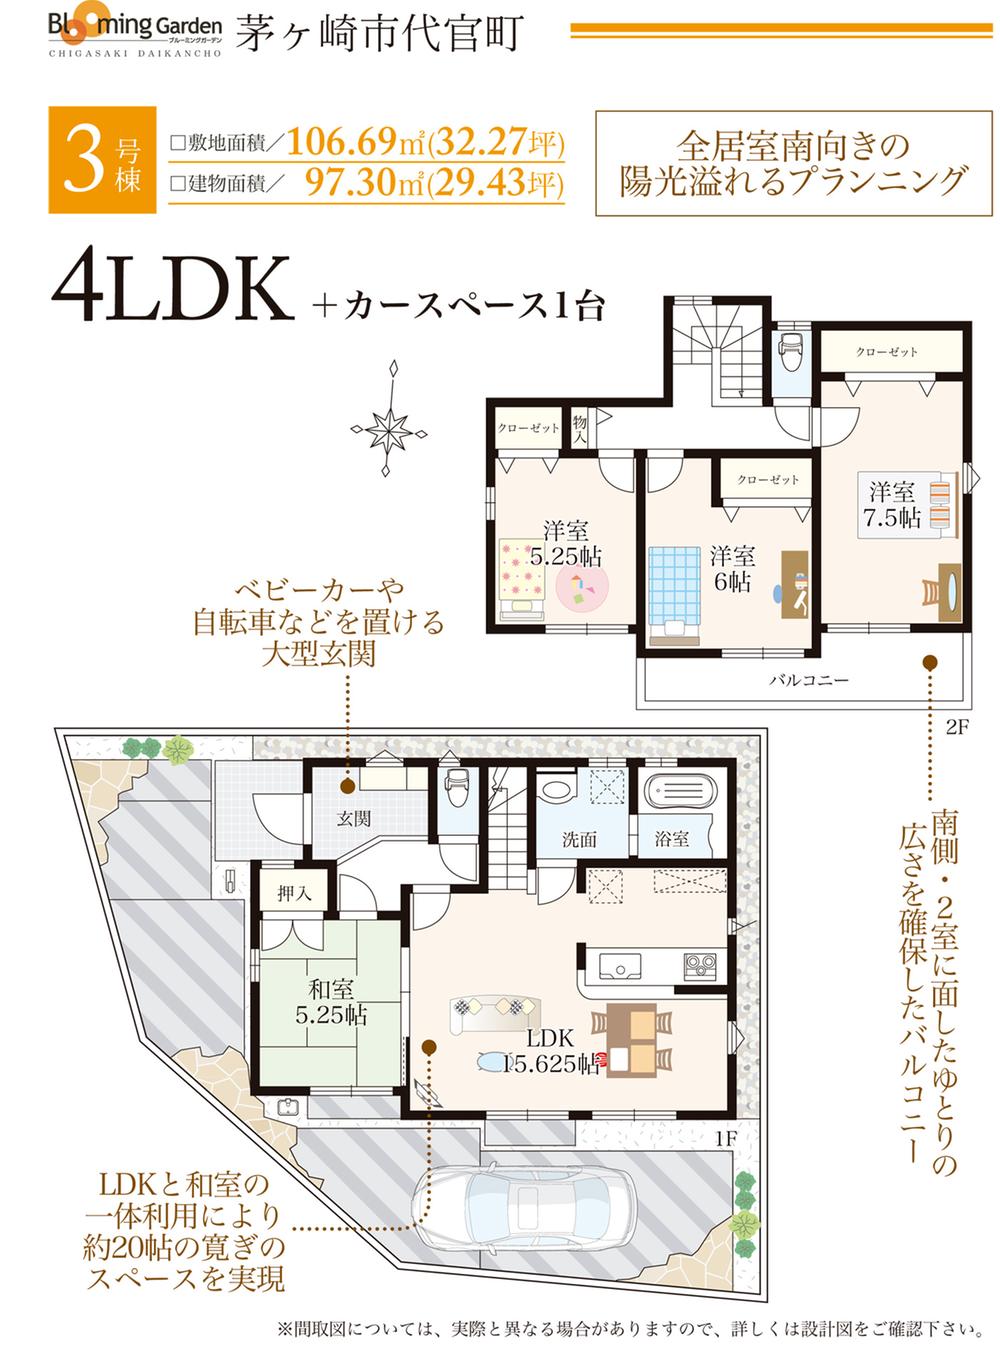 Floor plan. ○ 3 Building: floor plan